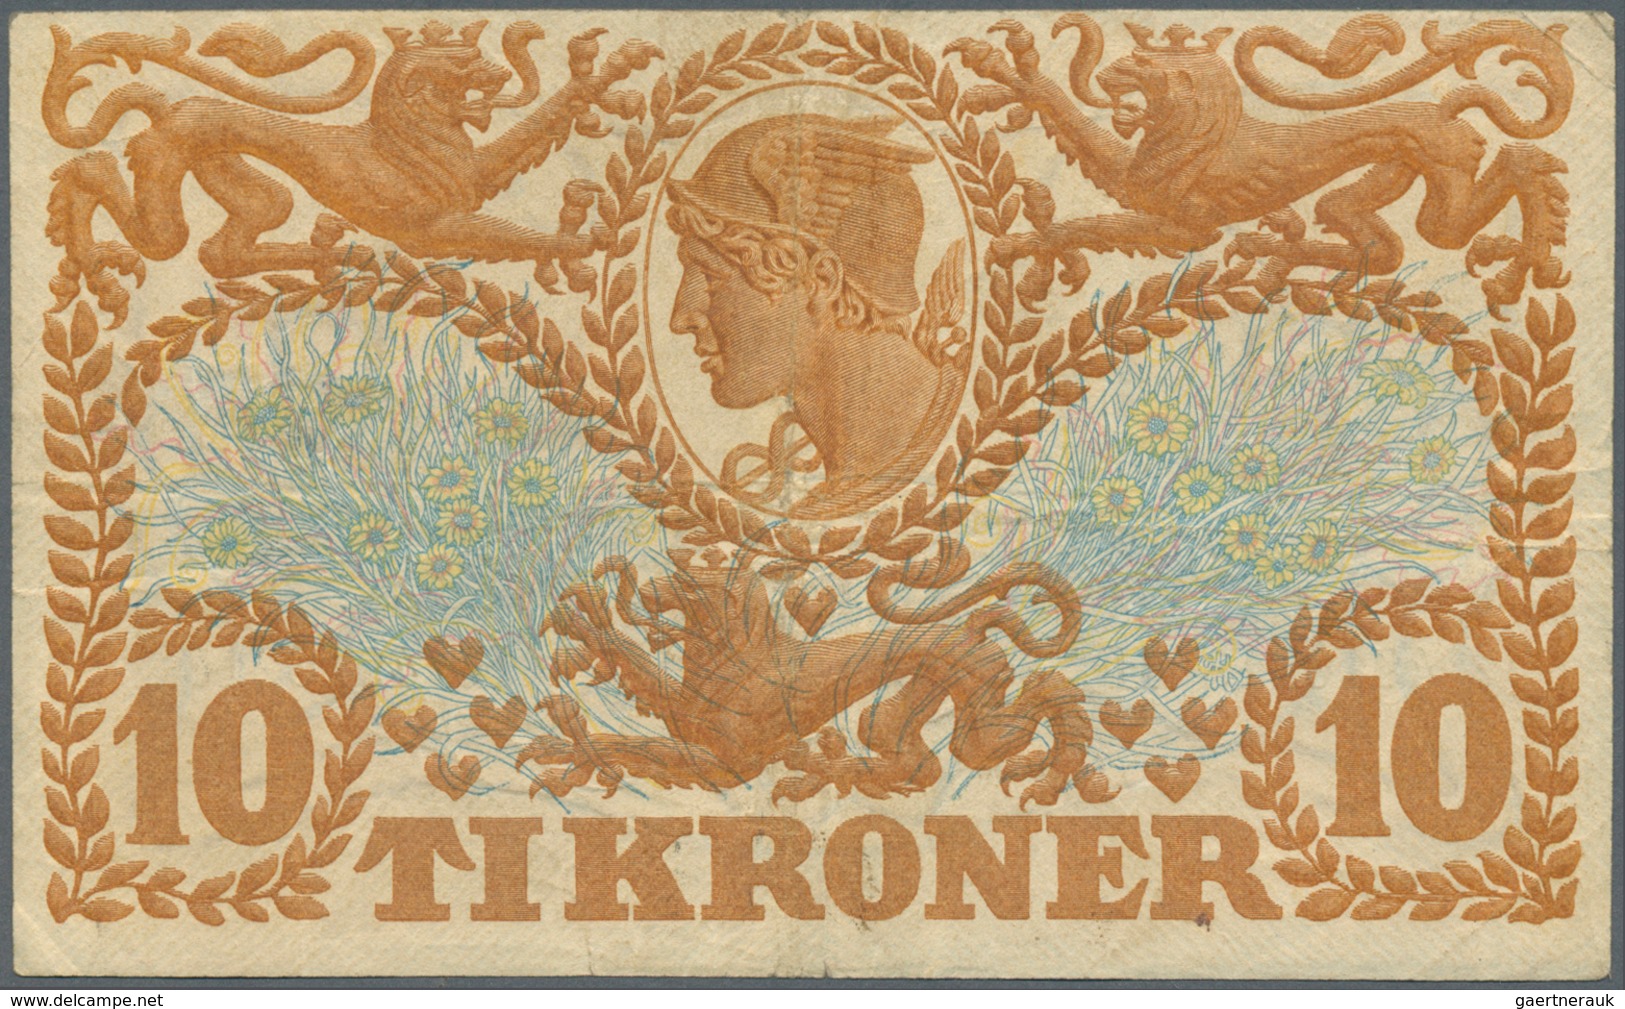 01352 Denmark  / Dänemark: 10 Kroner 1922 P. 21n, Rarer Early Date With Vertical And Horizontal Folds, No - Denemarken